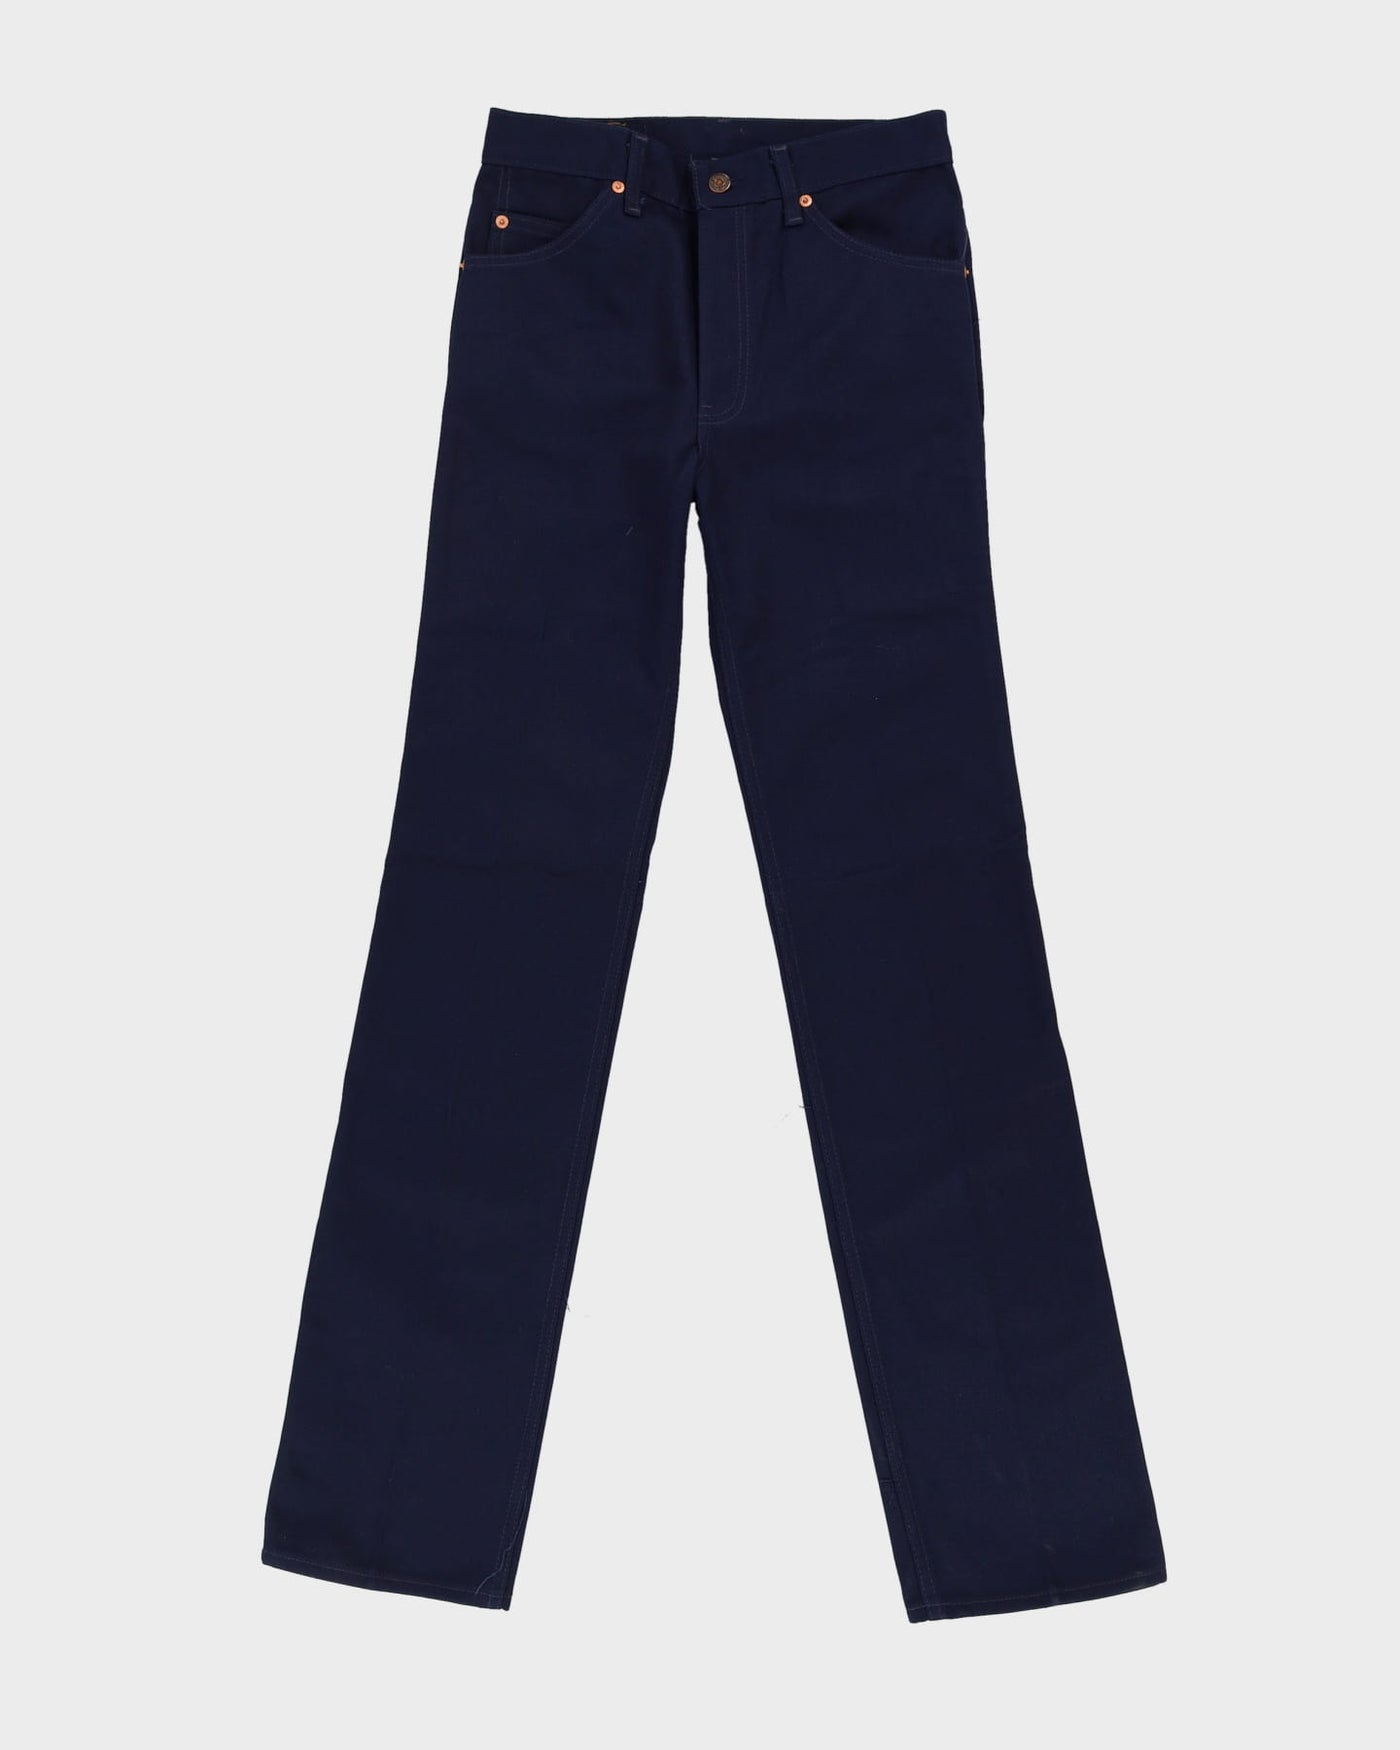 Vintage 70s Levi's Navy Jeans - W31 L36